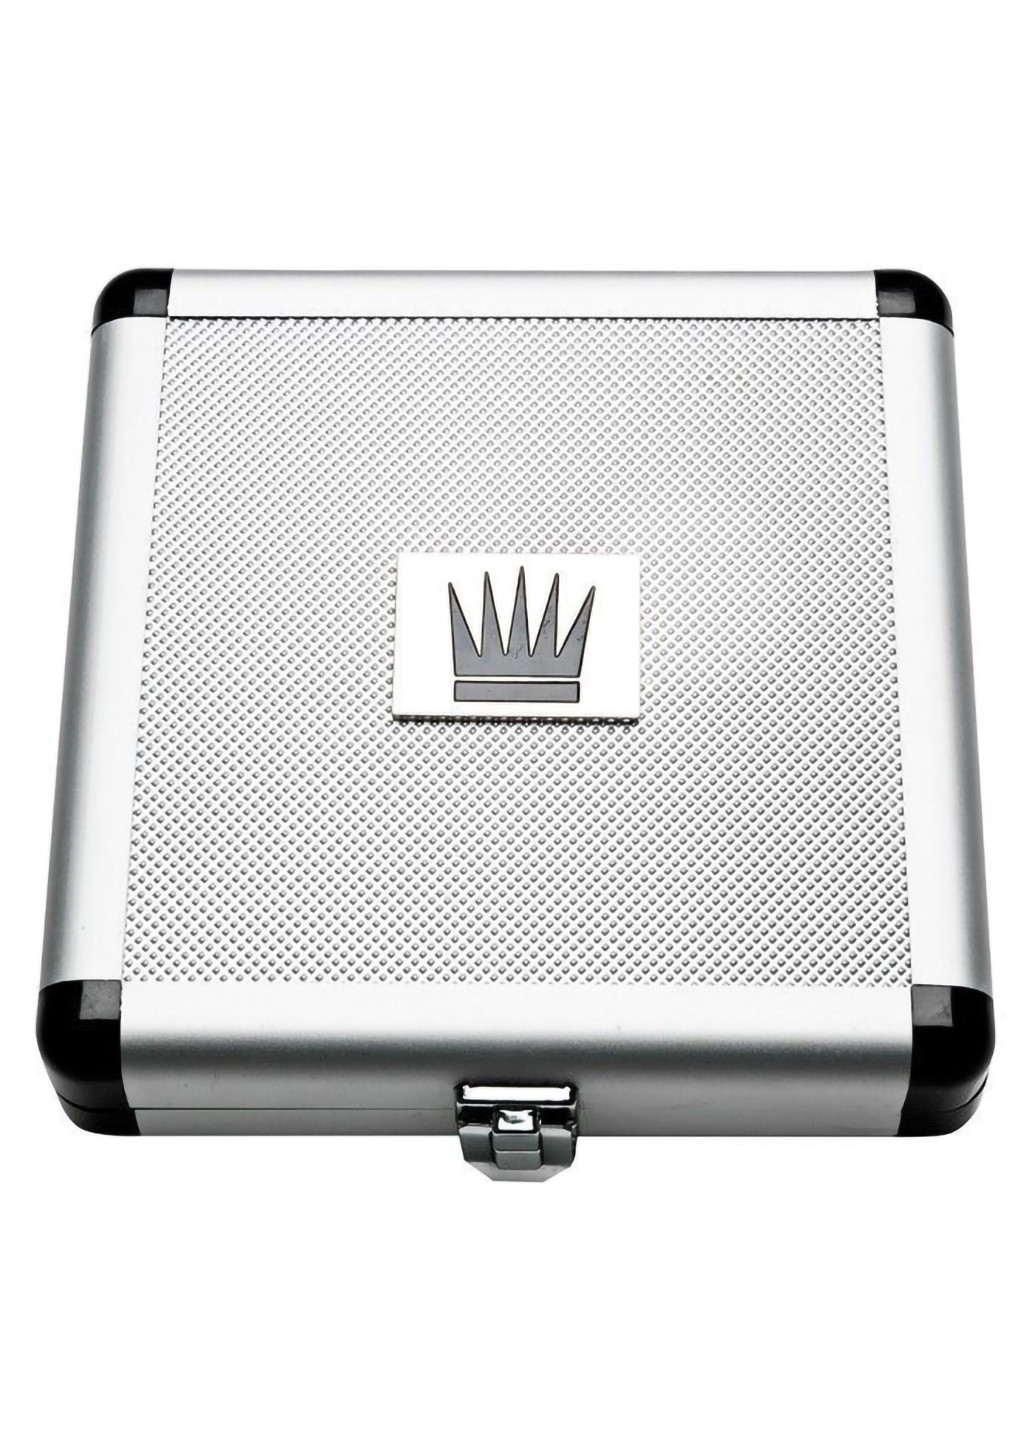 Экстендер для увеличения члена Jes-Extender Titanium, ремешковый, алюминиевый кейс Male Edge (254150763)